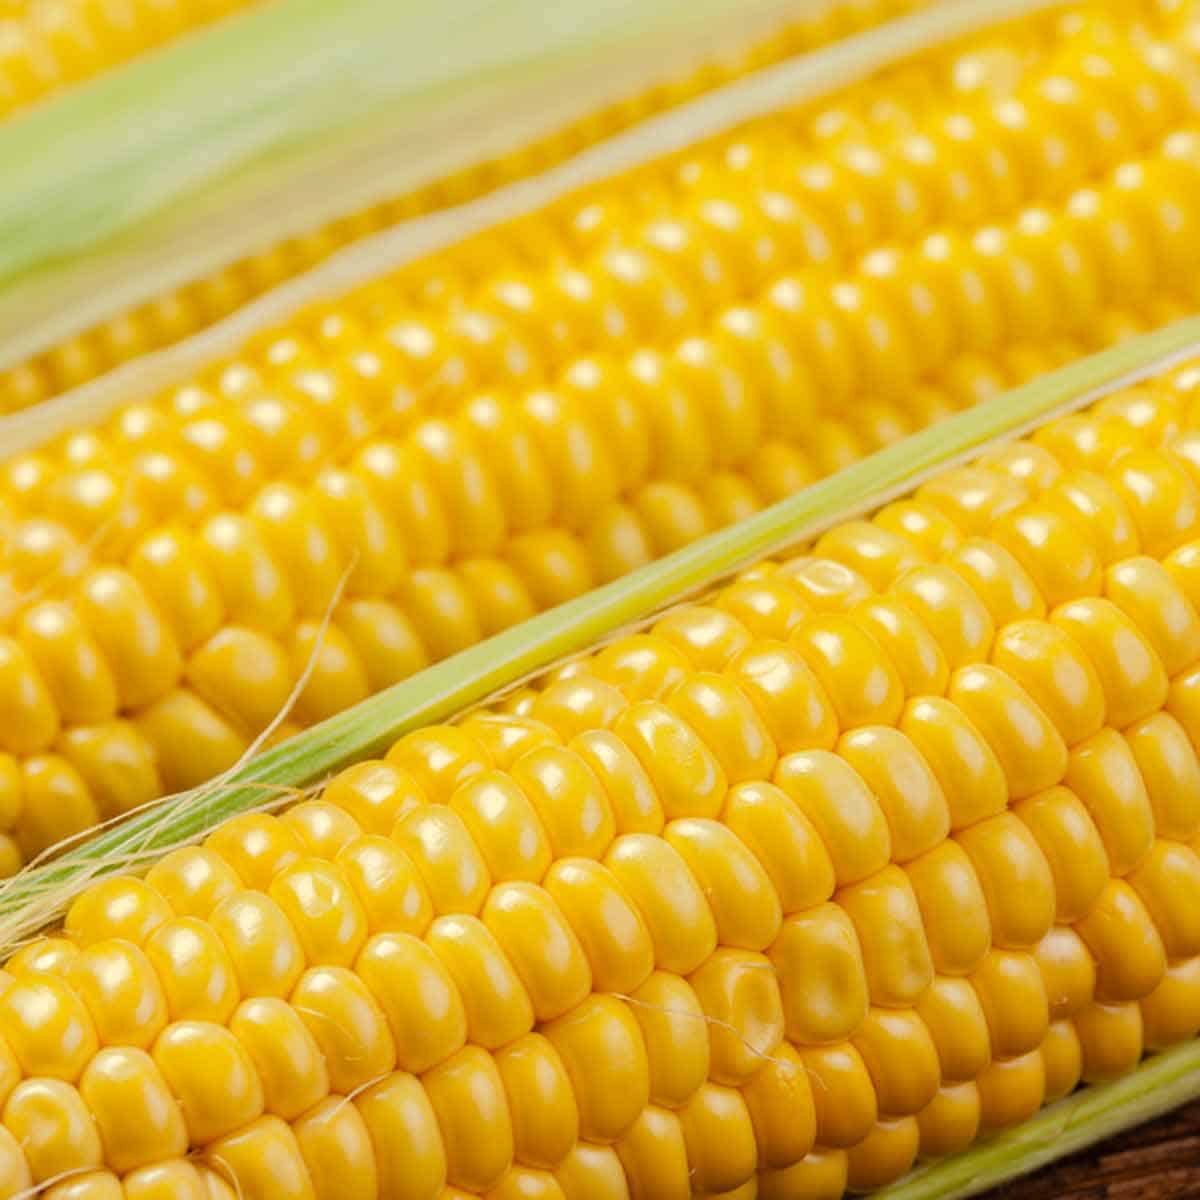 Three ears of shucked sweet corn.